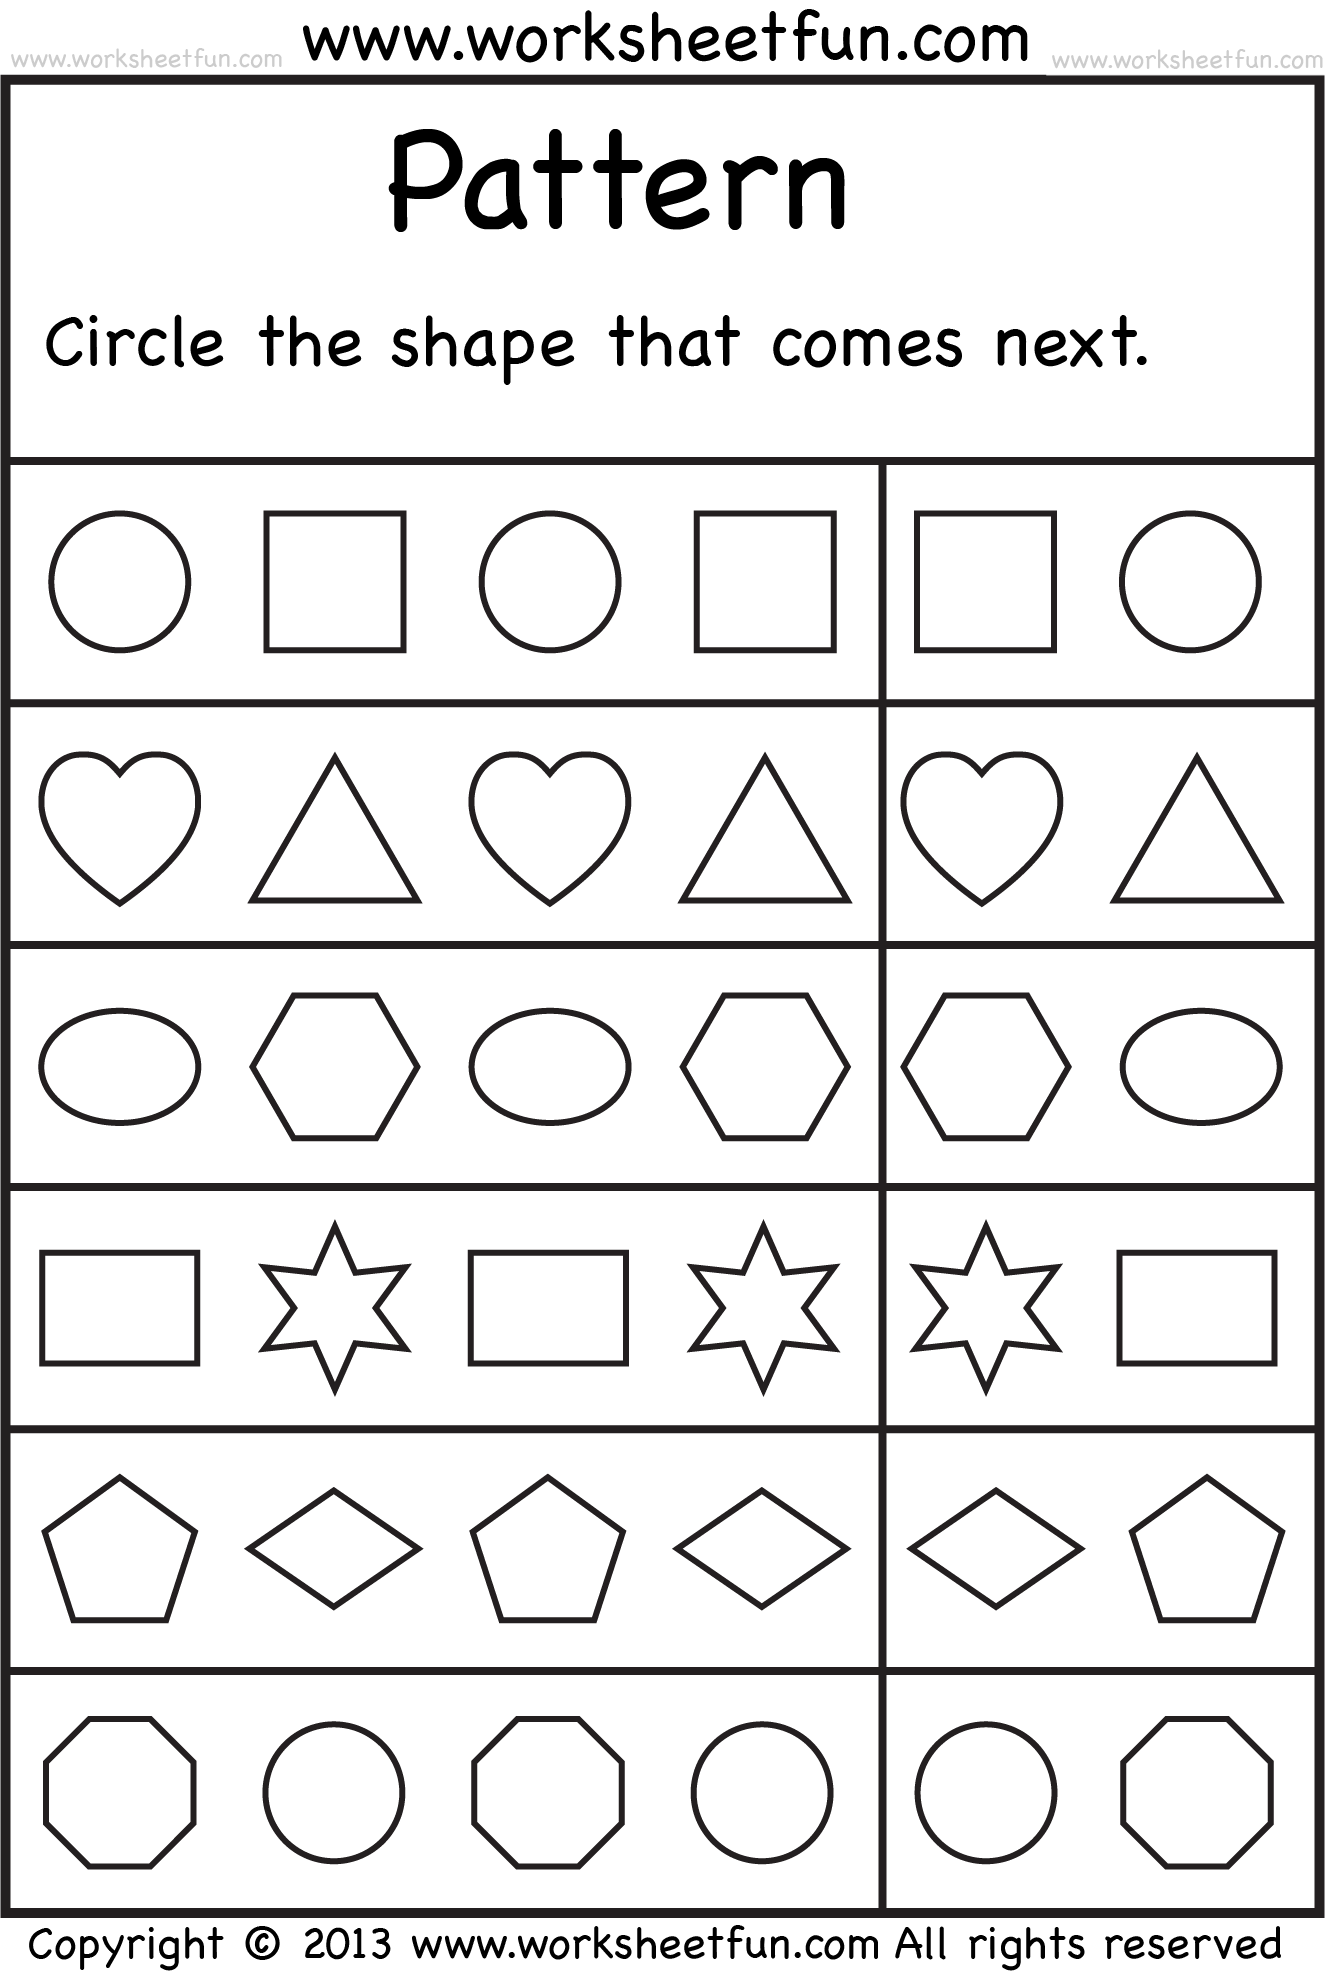 FREE Printable Worksheets Pattern Worksheets For Kindergarten Free Kindergarten Worksheets Shapes Worksheet Kindergarten